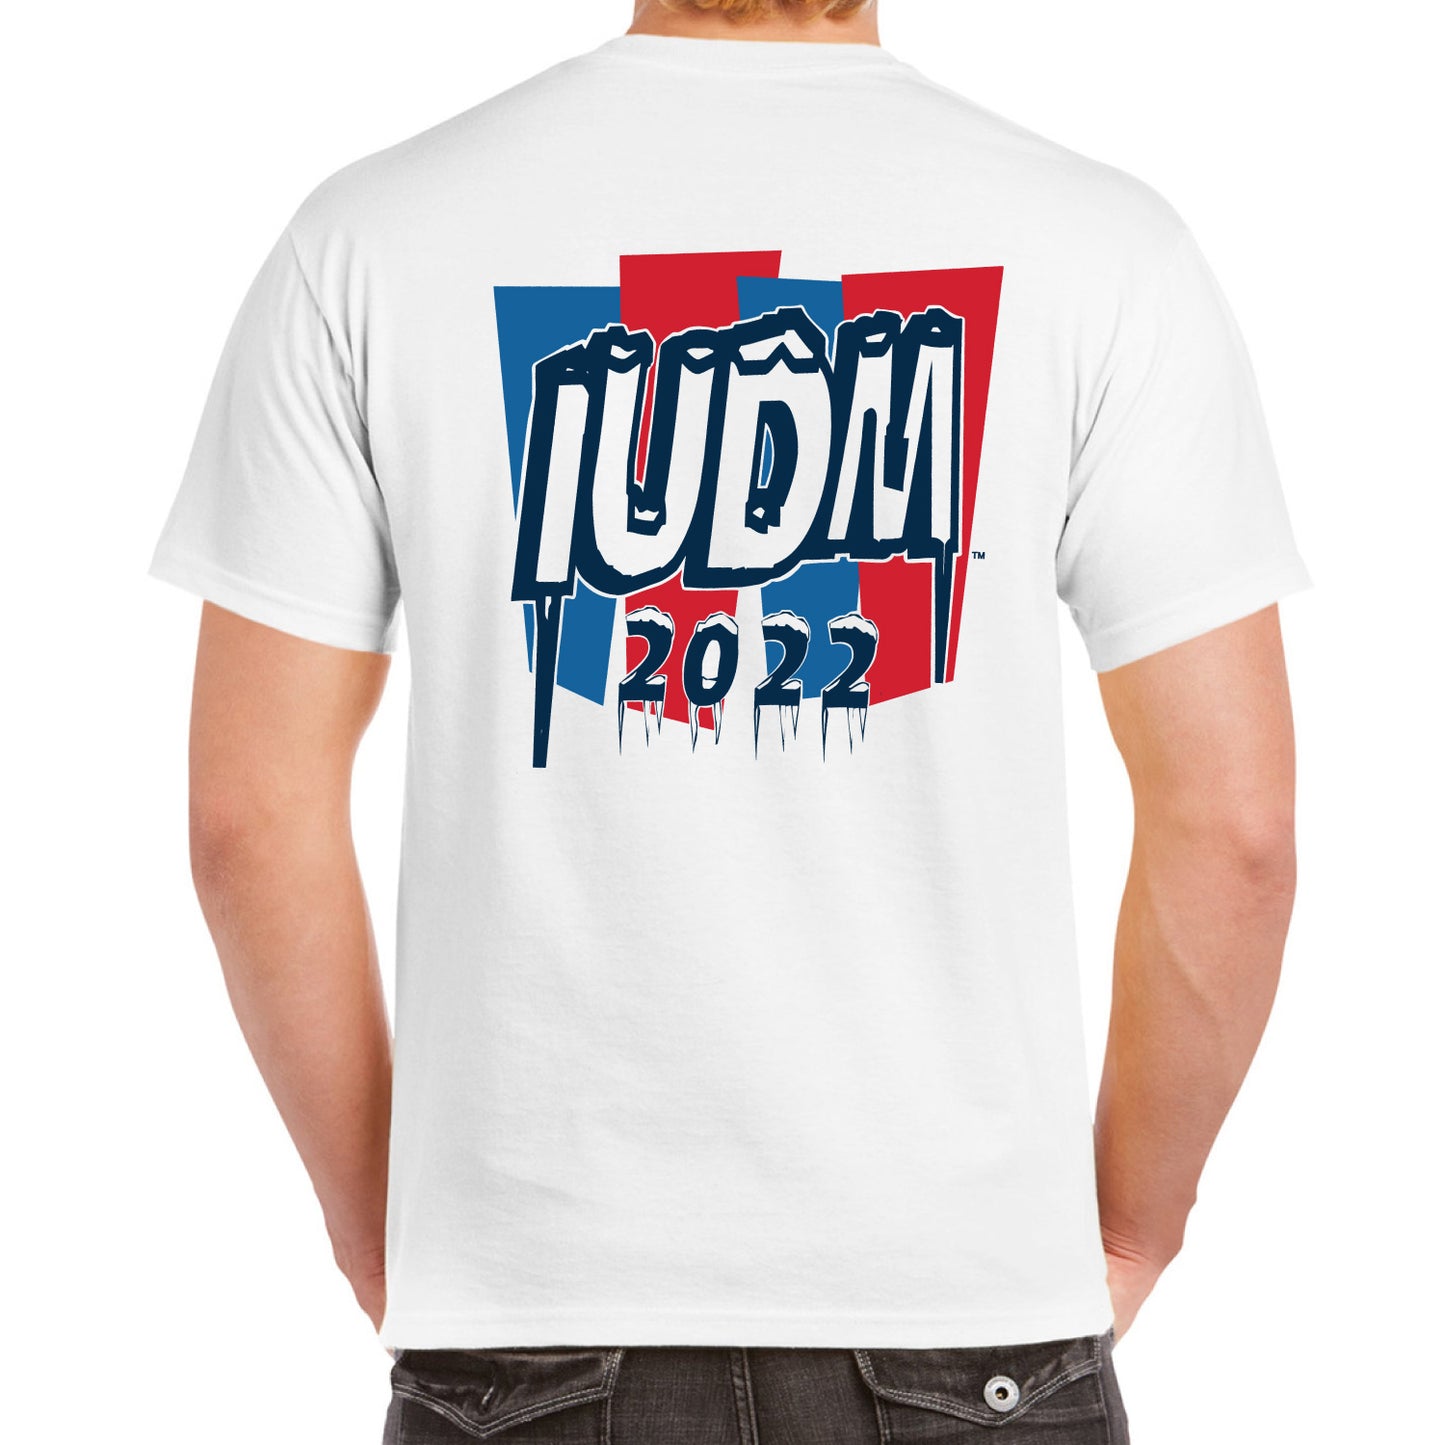 IUDM ICEE T-Shirt- White